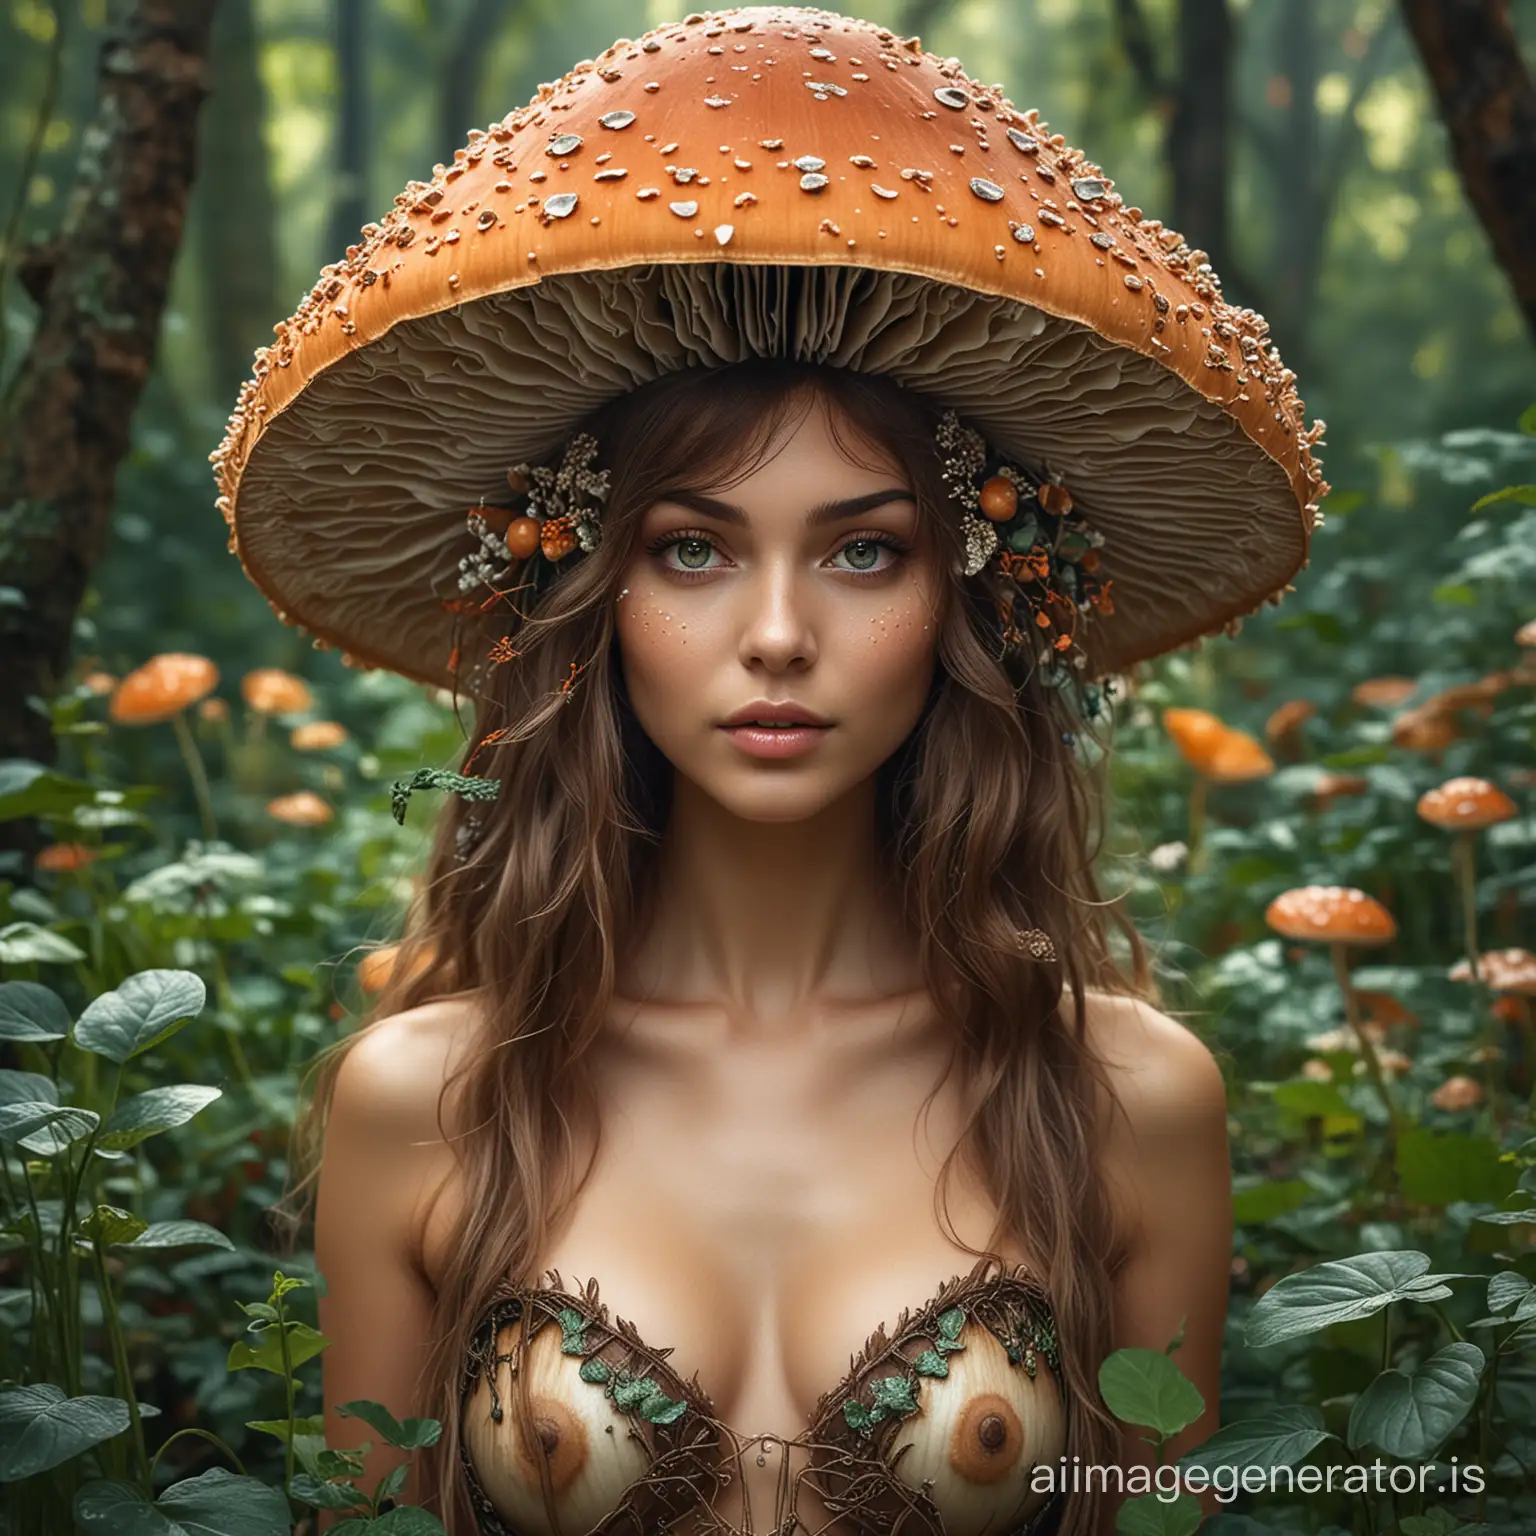 a beautiful portrait of a magical women who looks like she is a mushroom nymph and controls plants, she looks goddess like